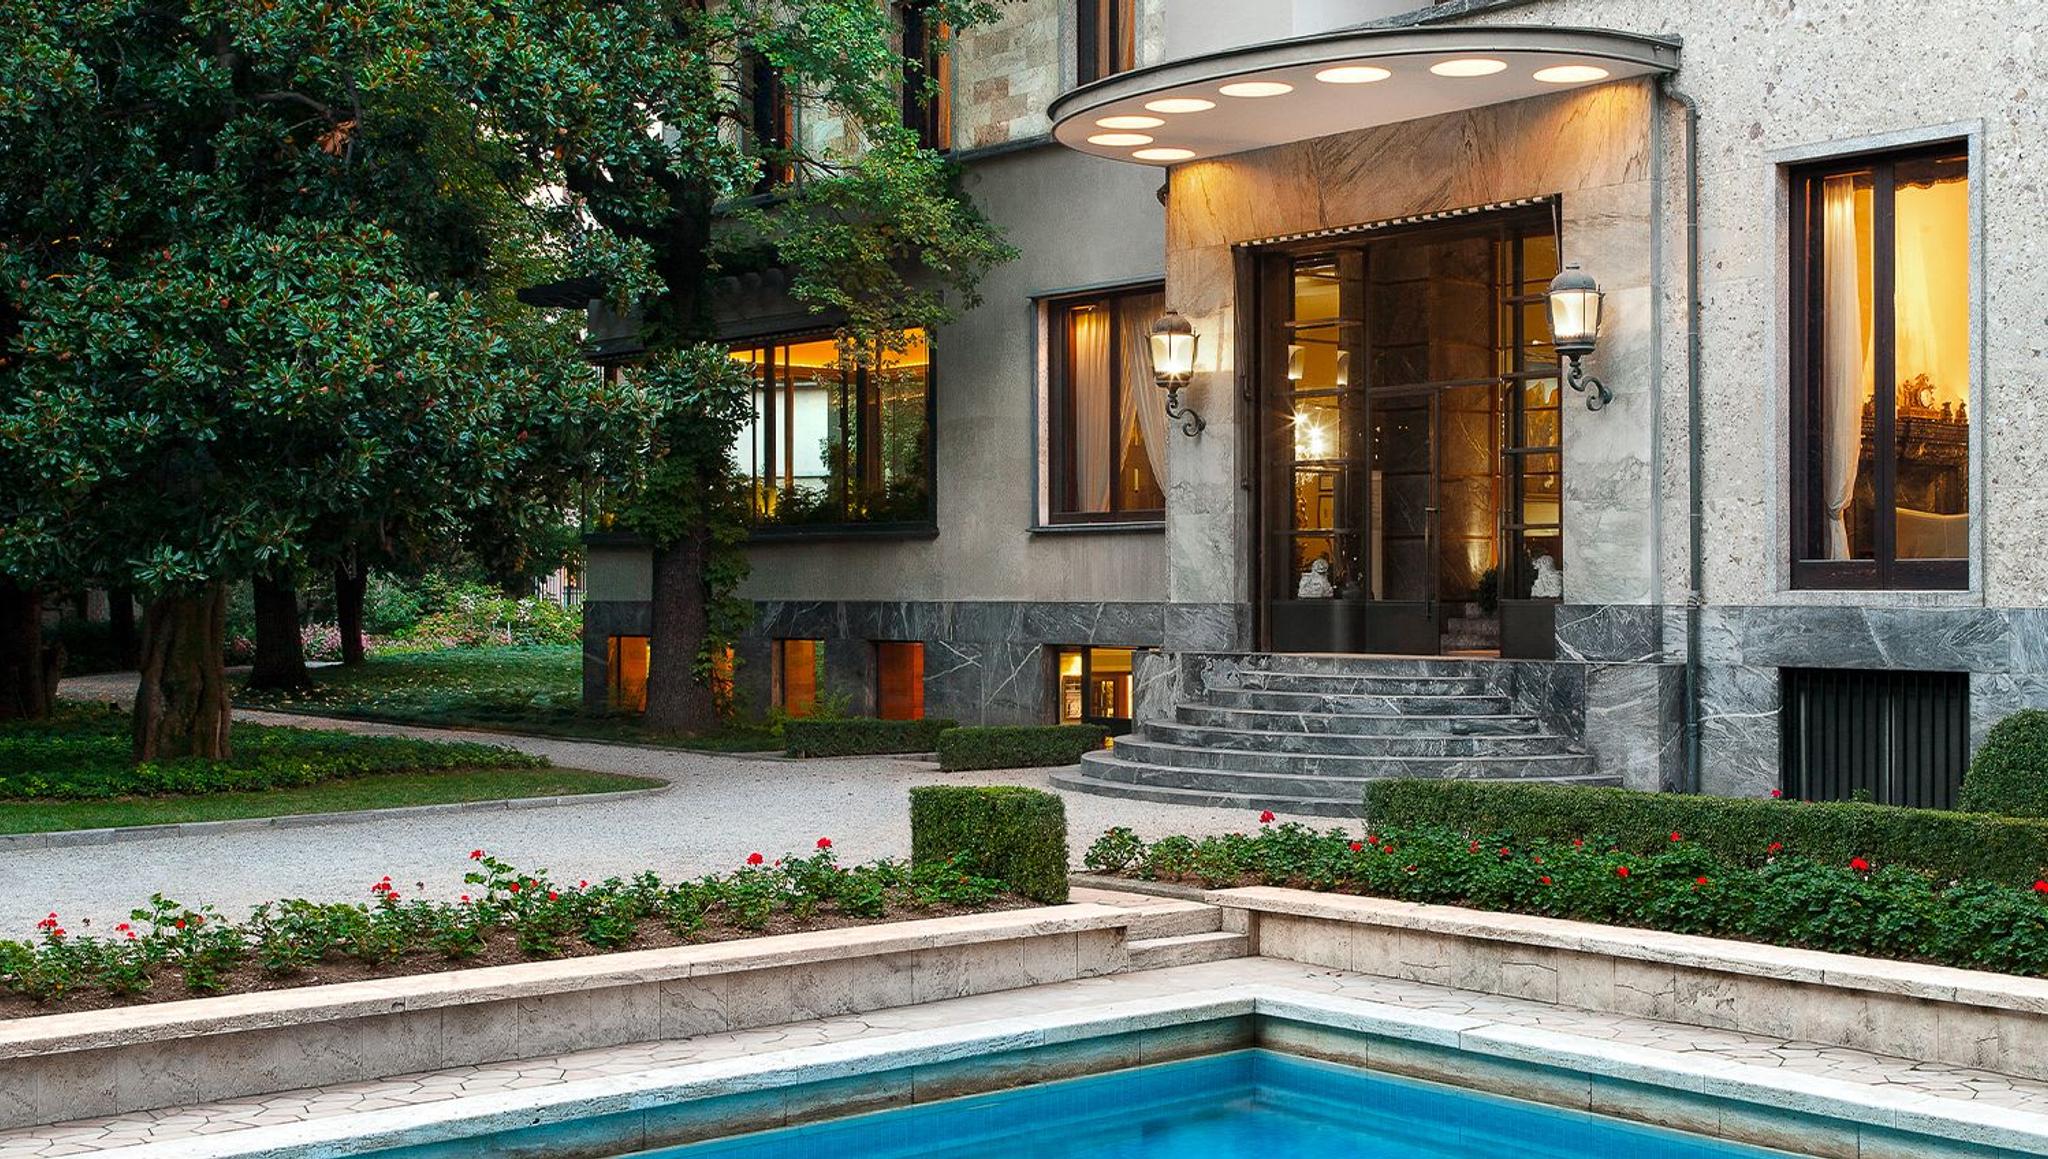 Villa Necchi Campiglio: Art Deco Jewel in Milan